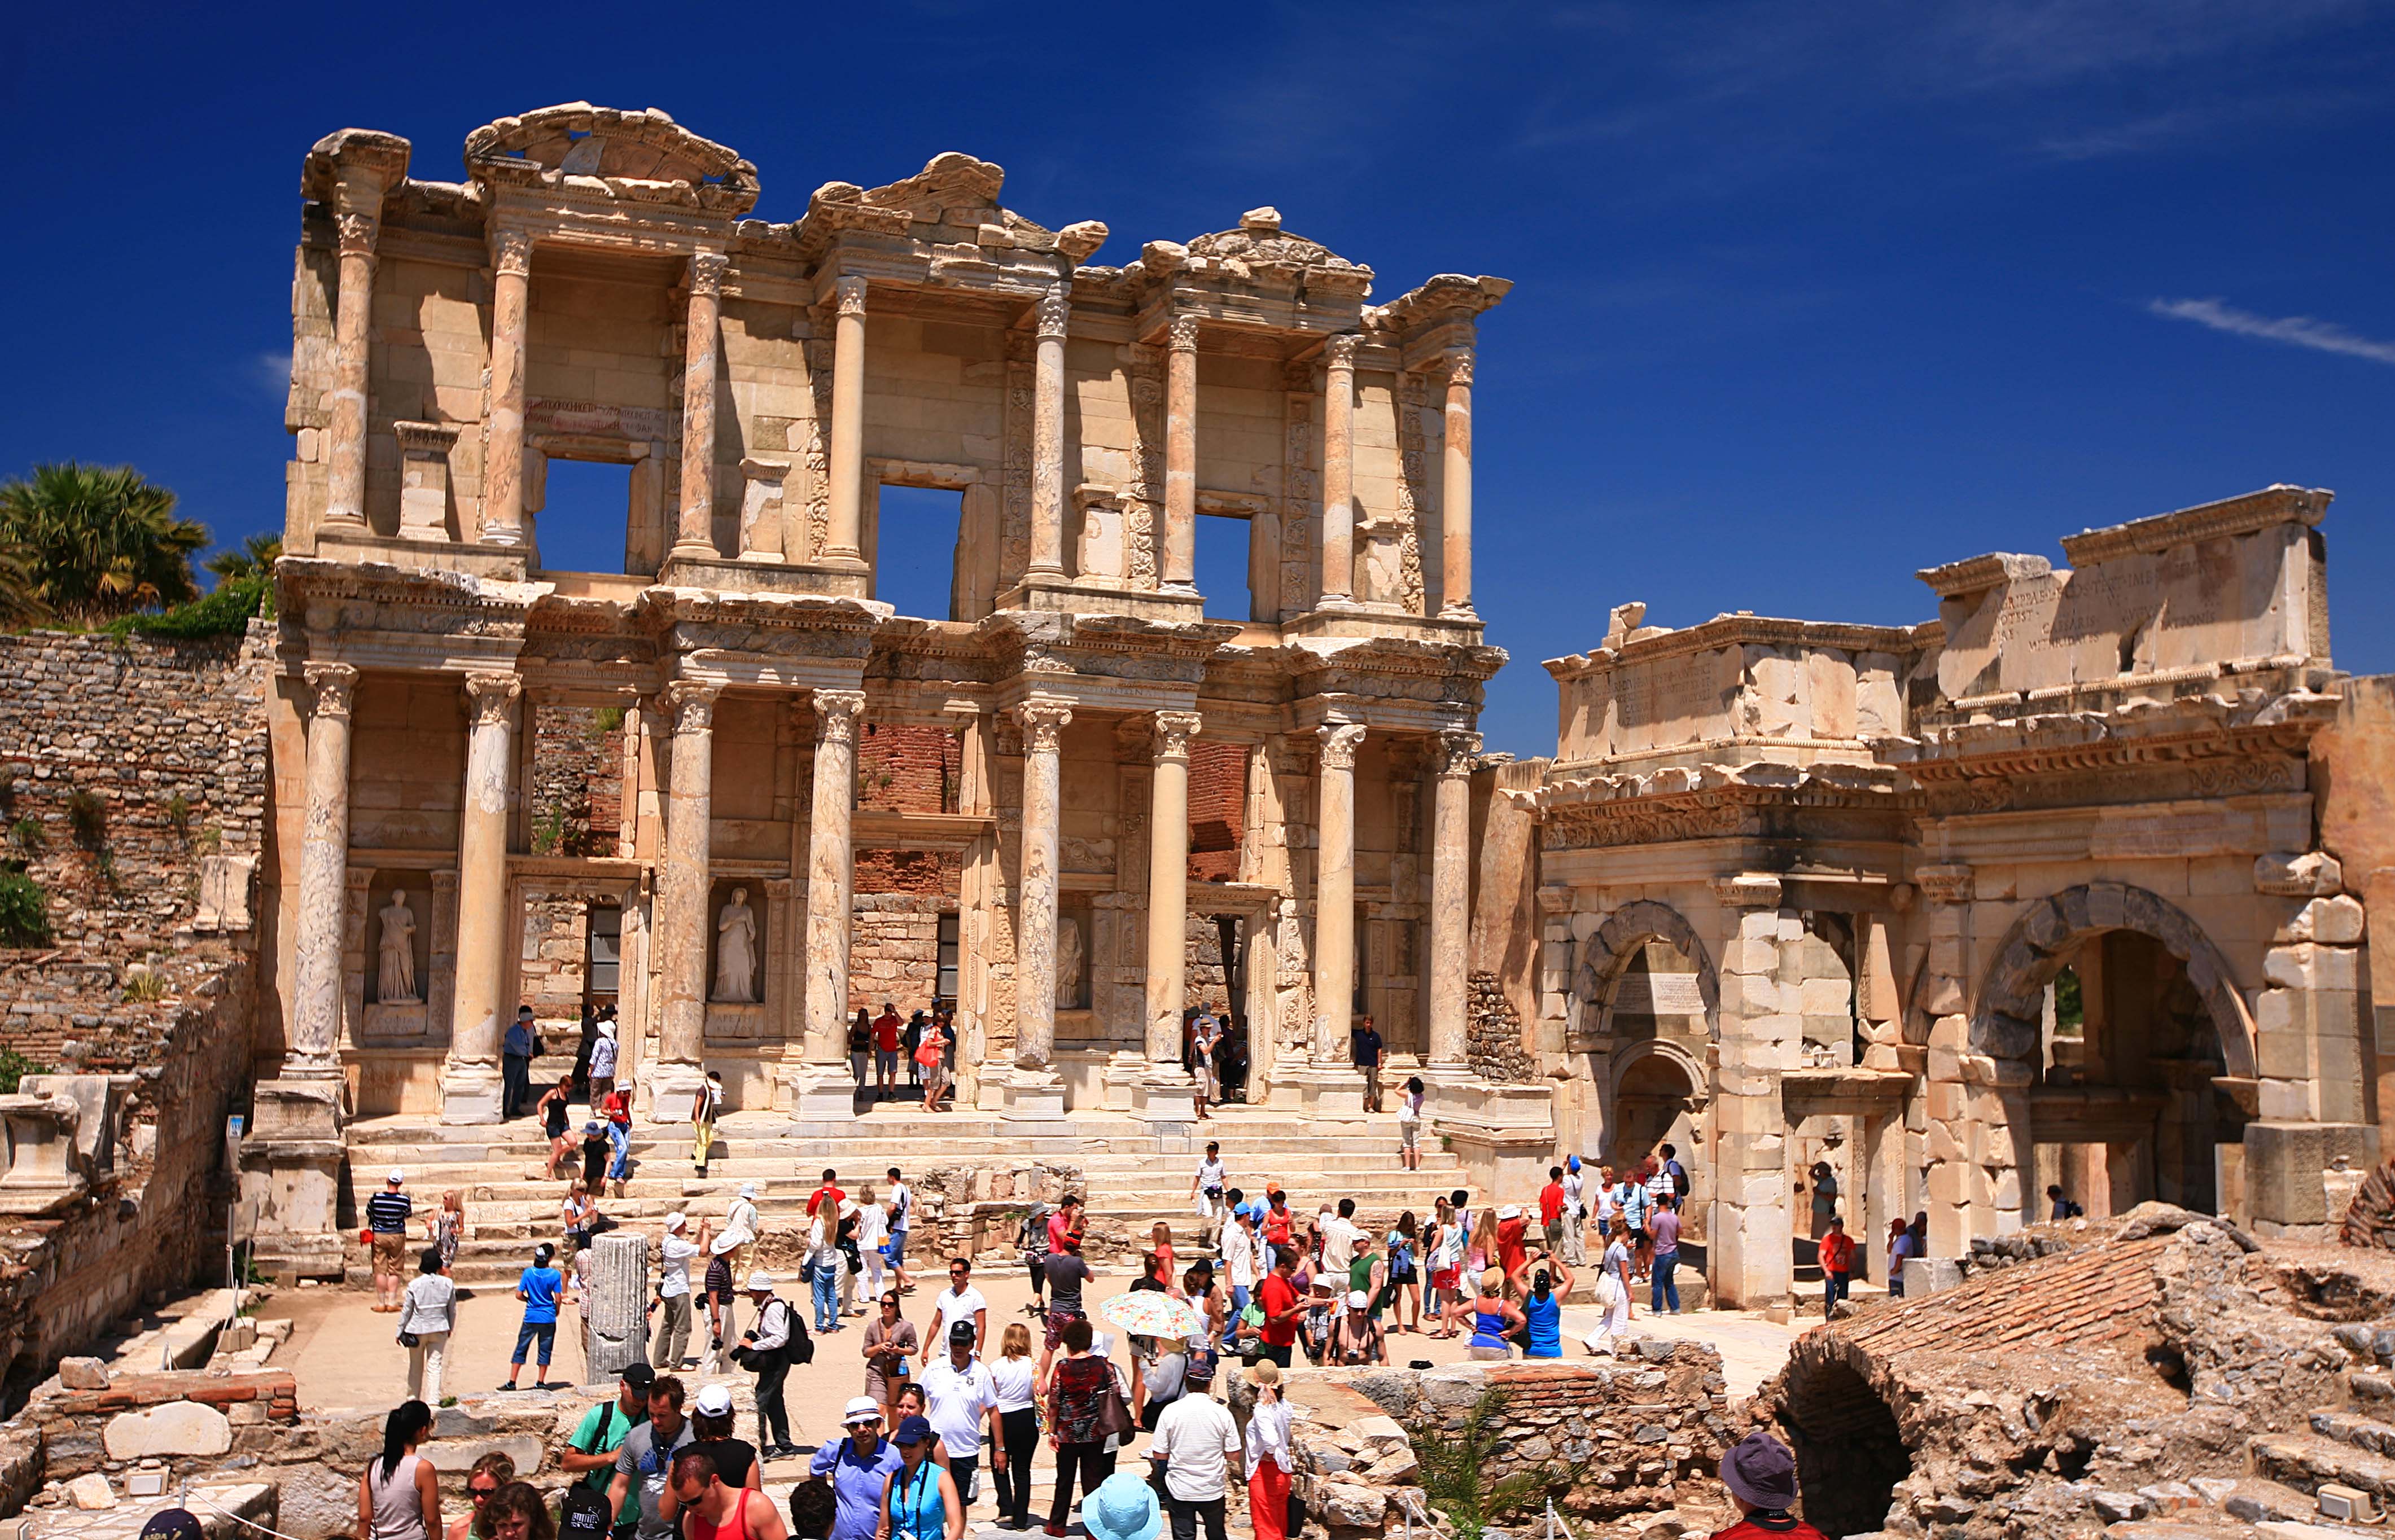 File:Library of Celsus - Ancient City of Ephesus, Selçuk, Turkey.jpg ...